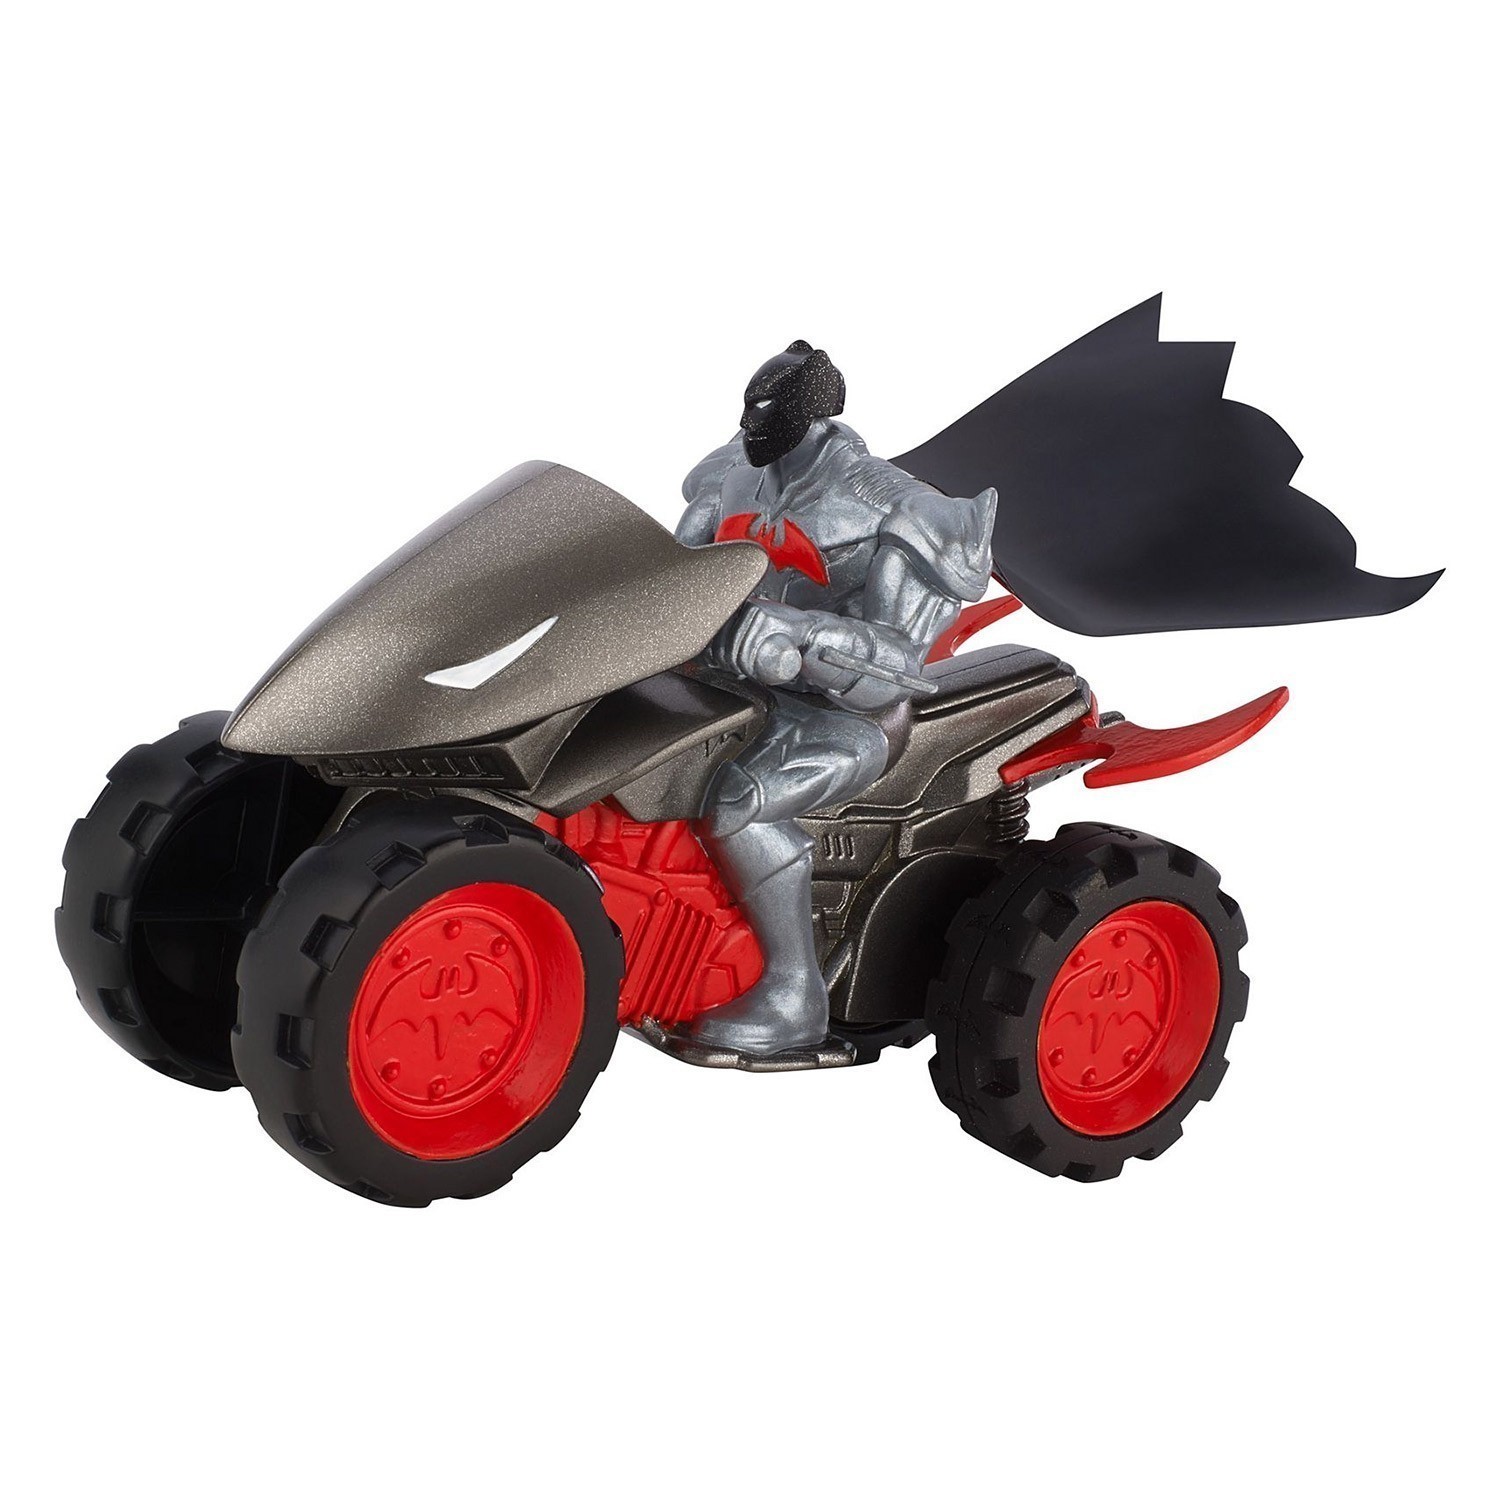 Batman Unlimited - Groun Assault ATV